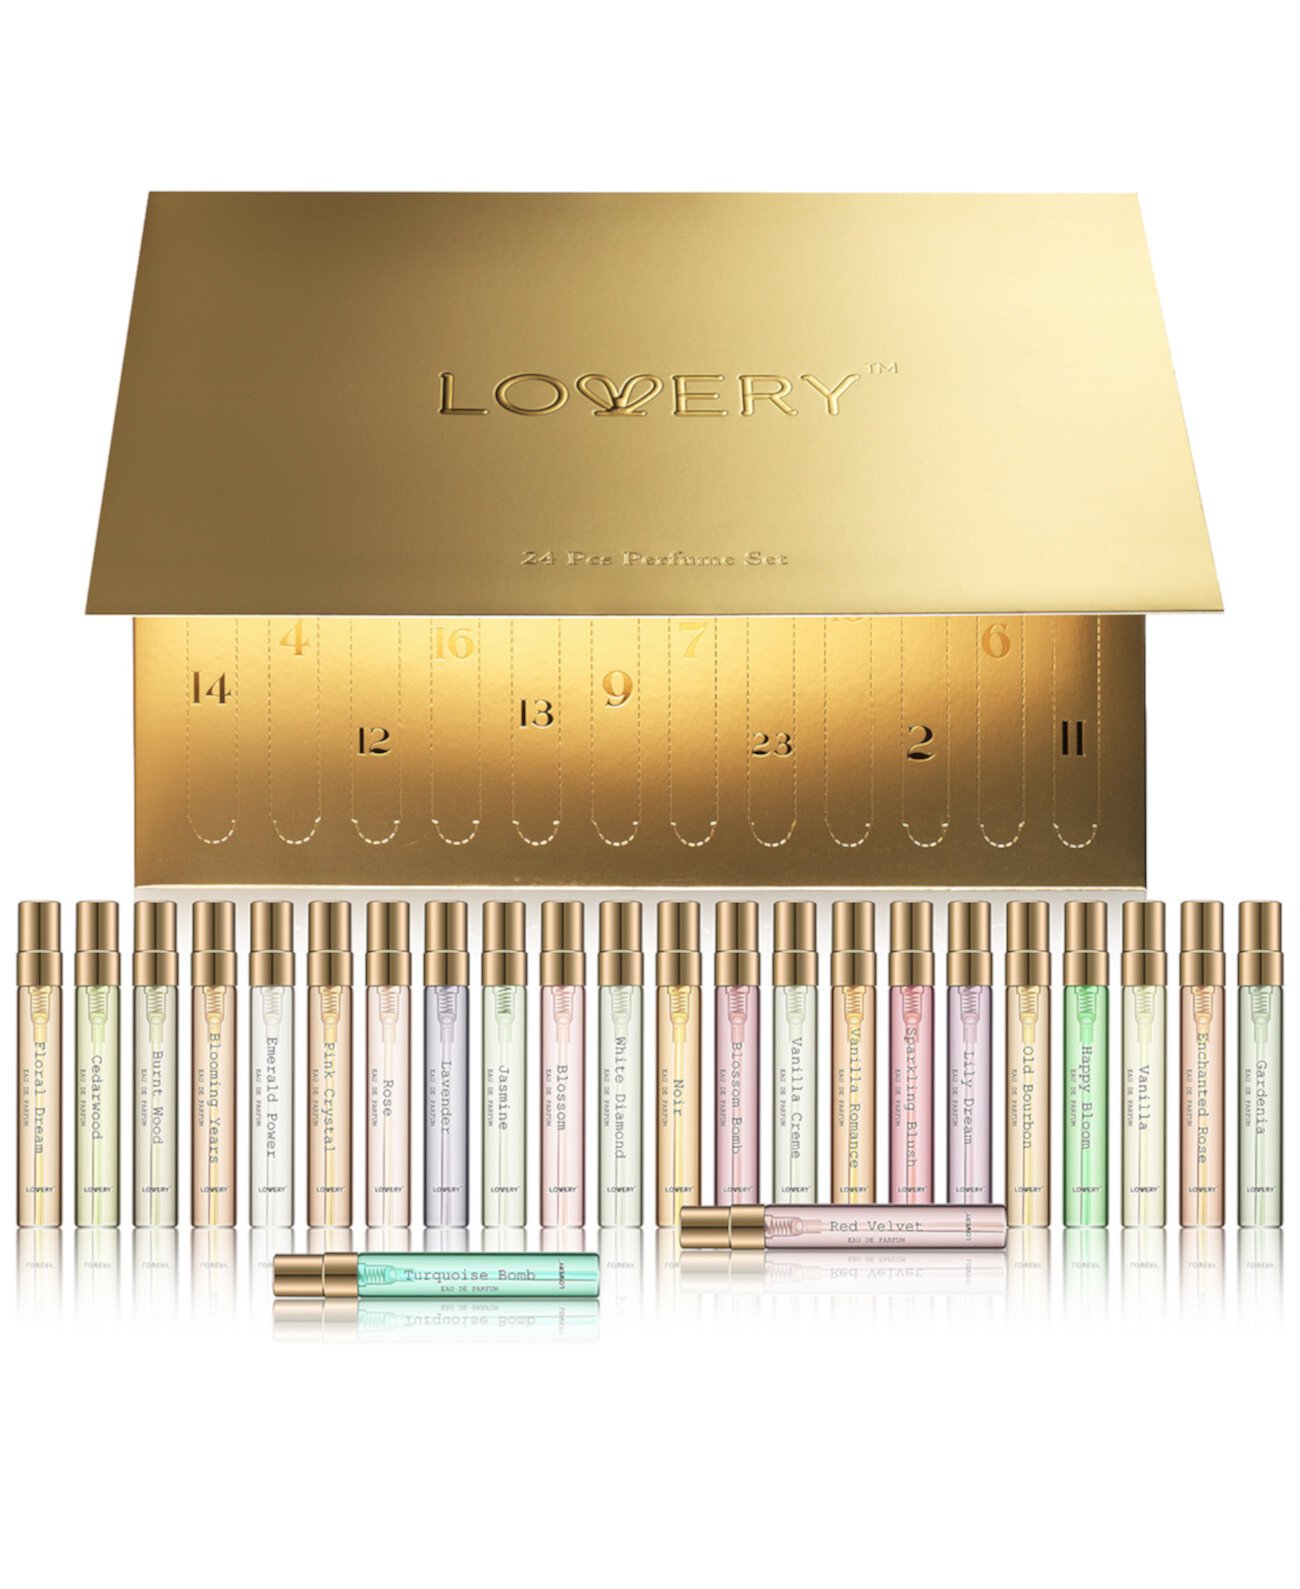 24-Pc. Limited-Edition Luxury Eau de Parfum Gift Set Lovery